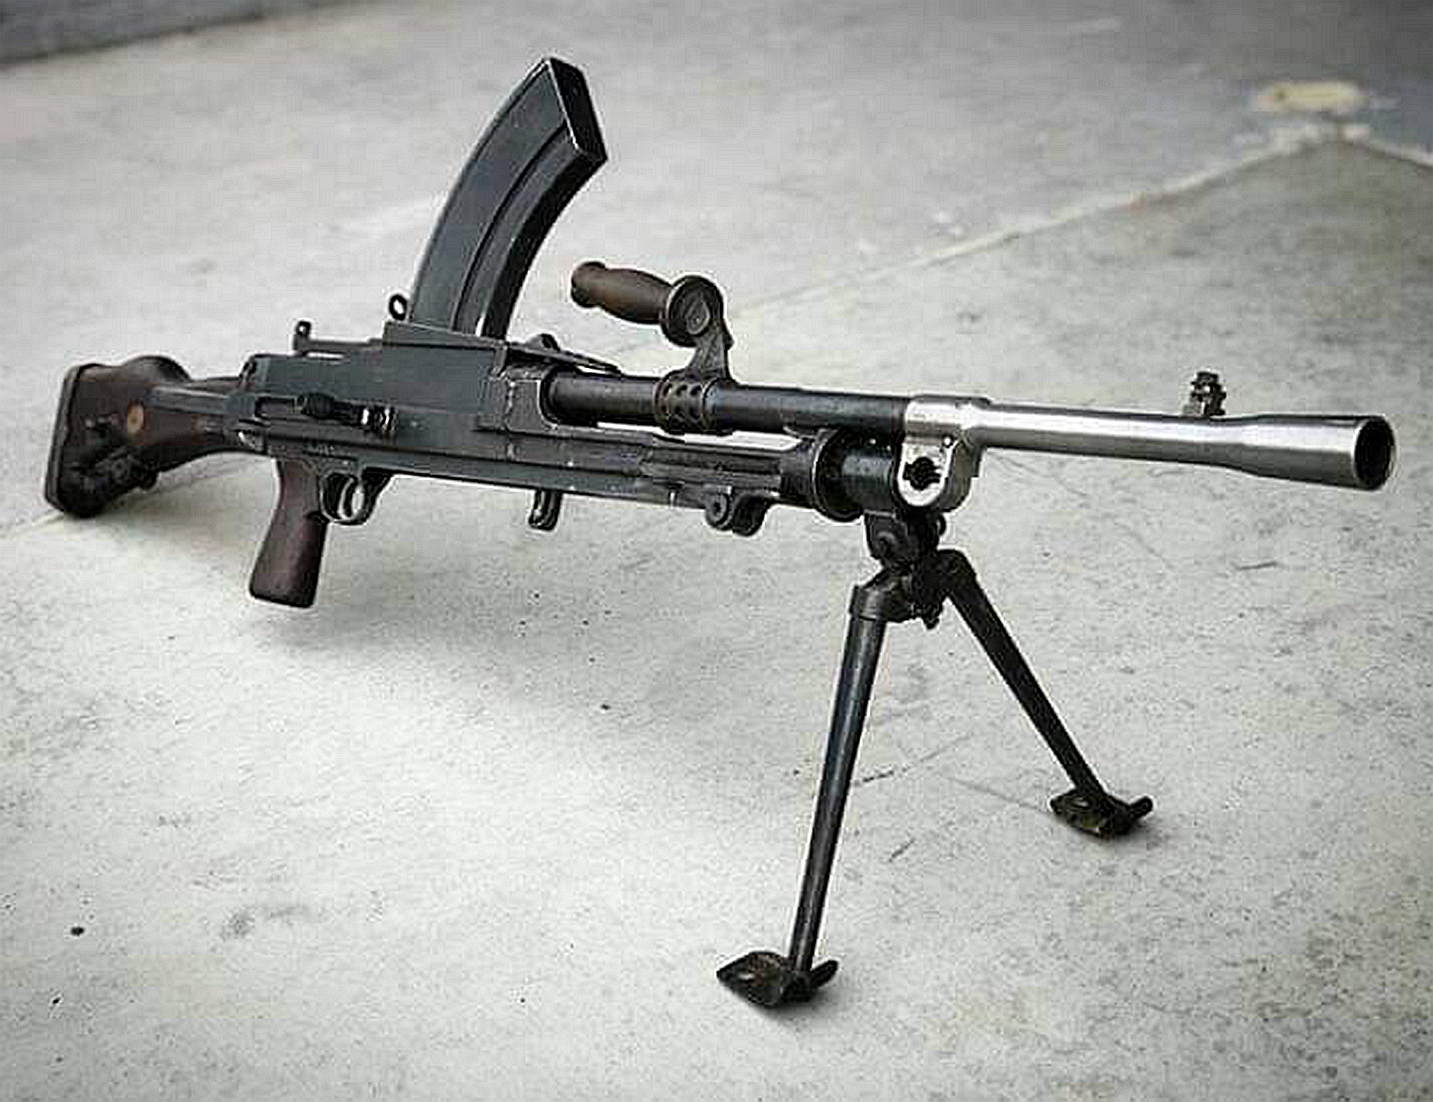 1/ 12 mg30是德国设计的机枪,在20世纪30年代的各国武装力量里都可以